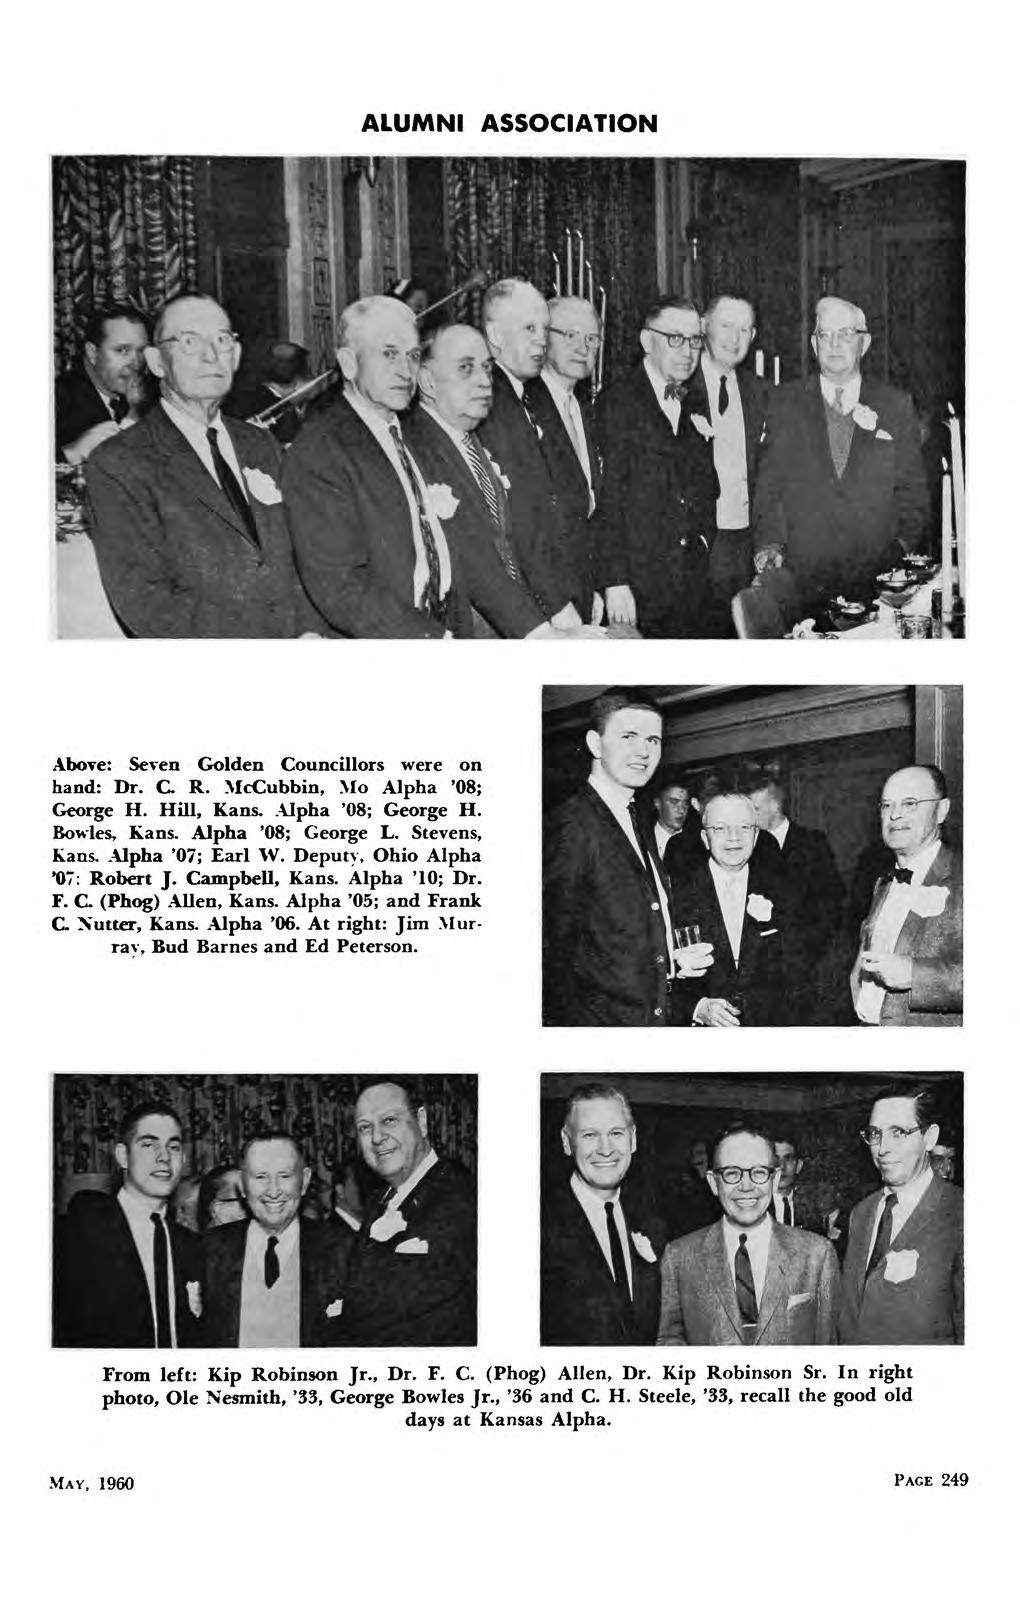 ALUMNI ASSOCIATION Above: Seven Golden Councillors were on hand: Dr. C R..McCubbin, Mo Alpha '08; George H. Hill, Kans..\lpha 08; George H. Bowles, Kans. Alpha '08; George L. Stevens, Kans.